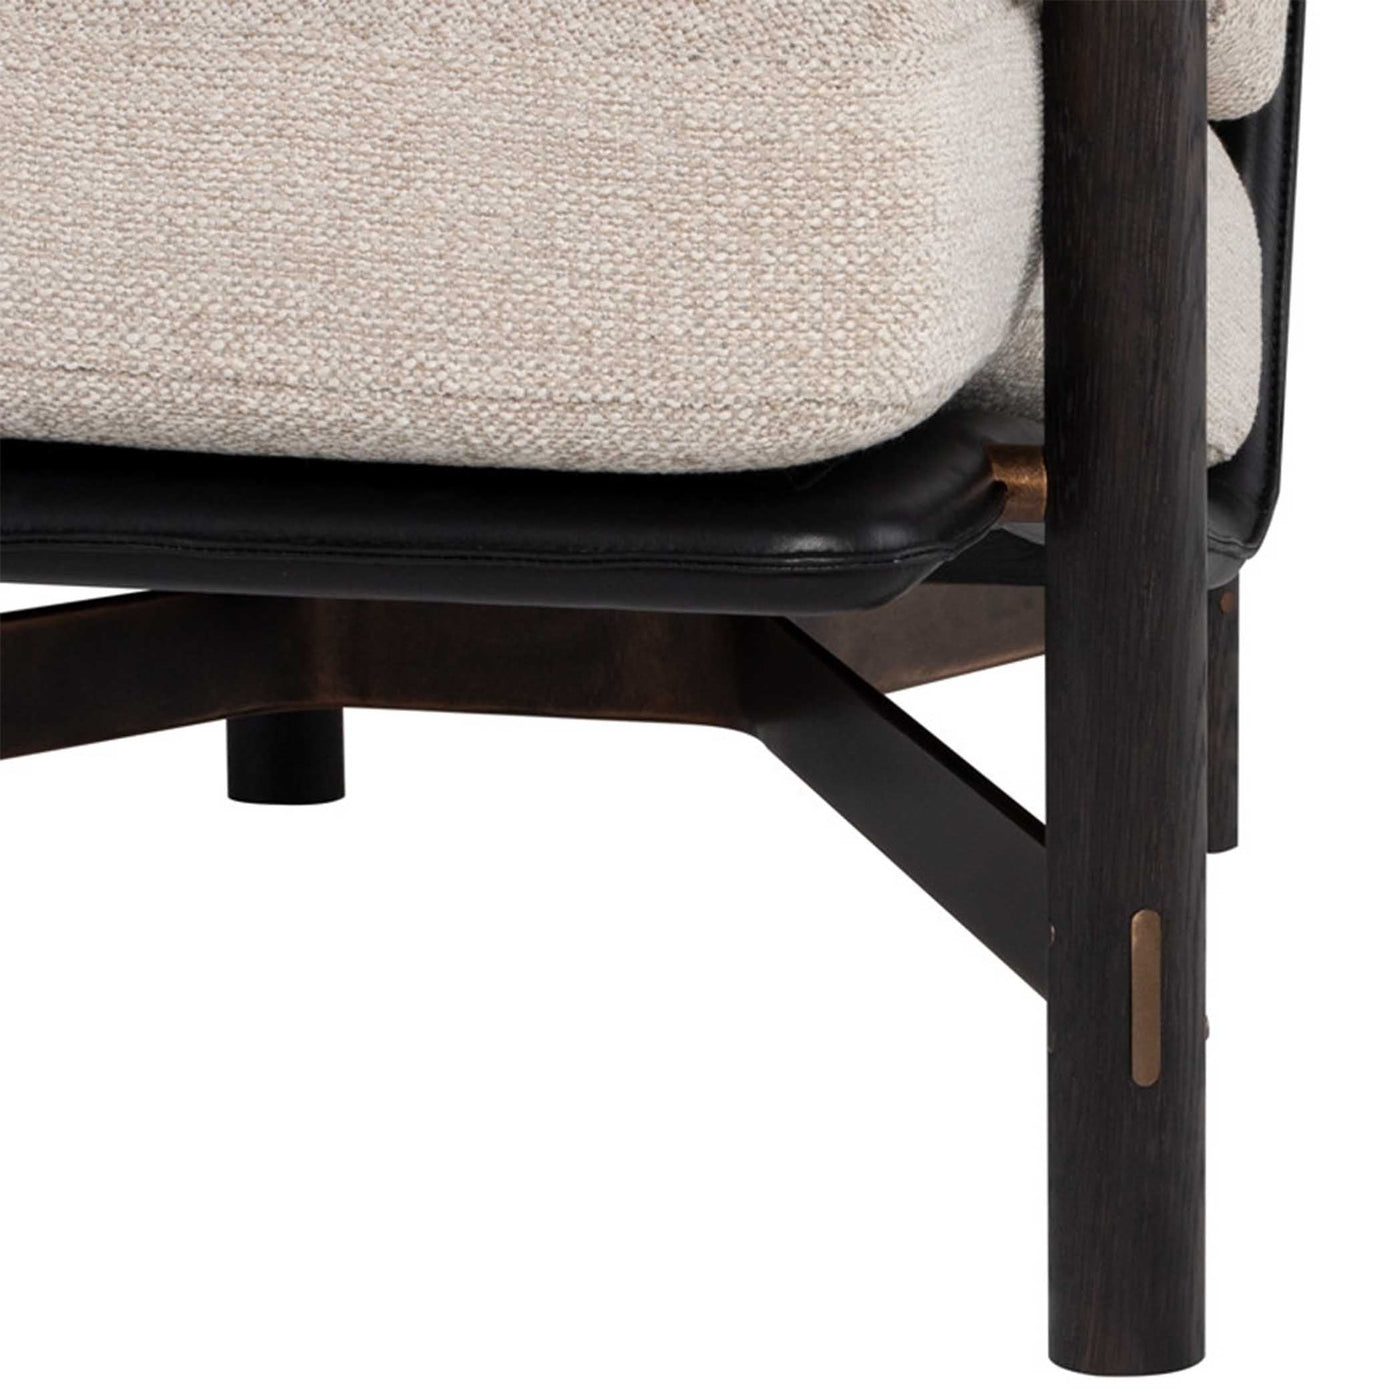 Le fauteuil Stilt de District Eight incarne l'élégance et le confort. Base en chêne, finitions en acier et coussins enveloppants pour une assise parfaite. Disponible en deux finitions distinctes